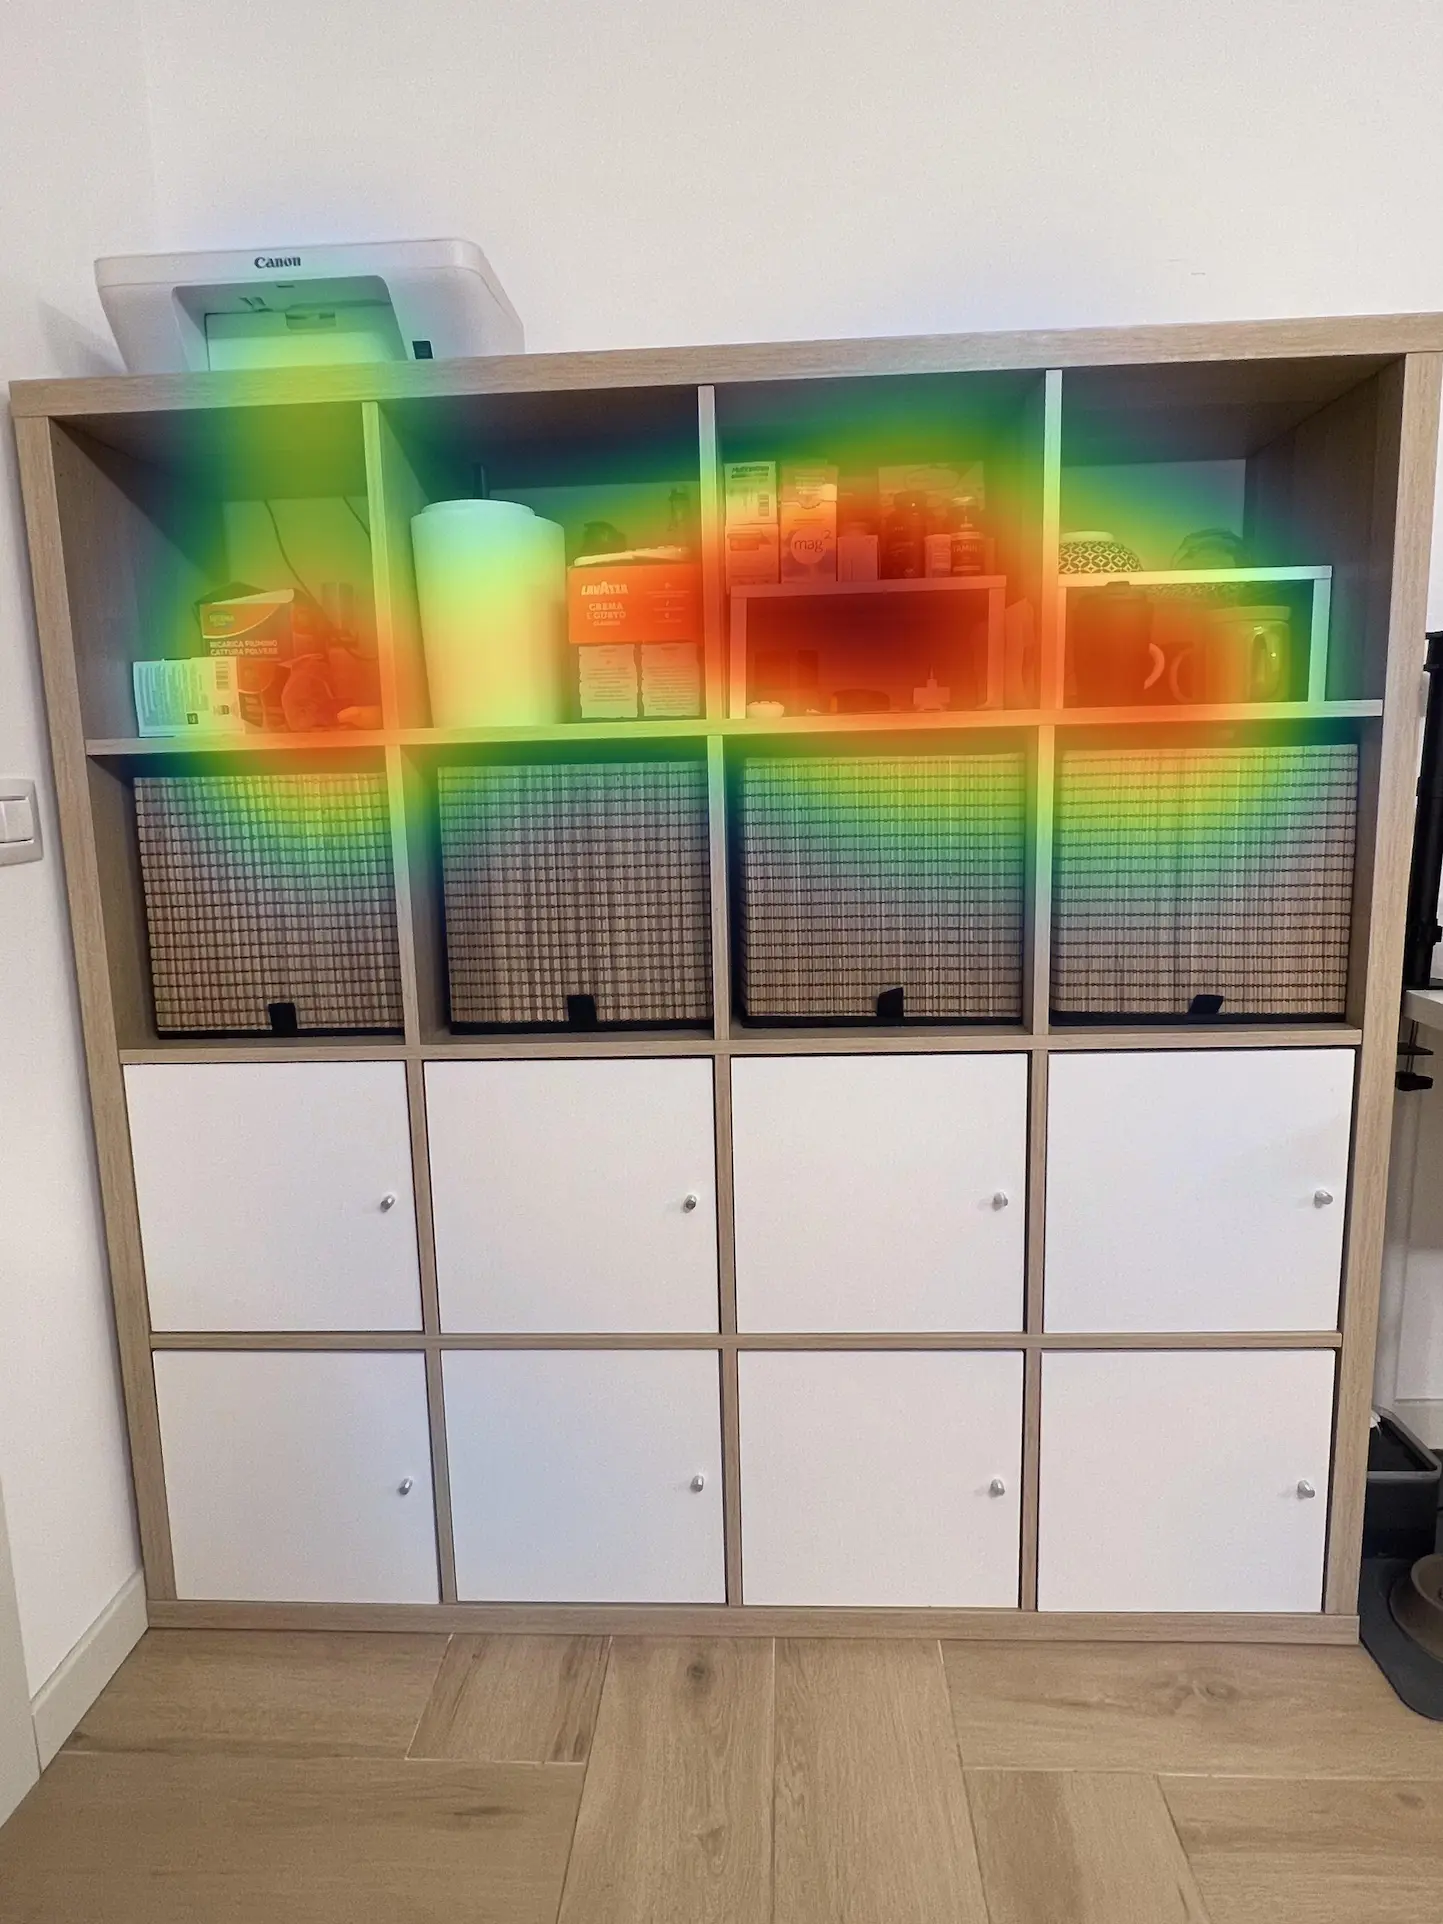 Cupboard heatmap